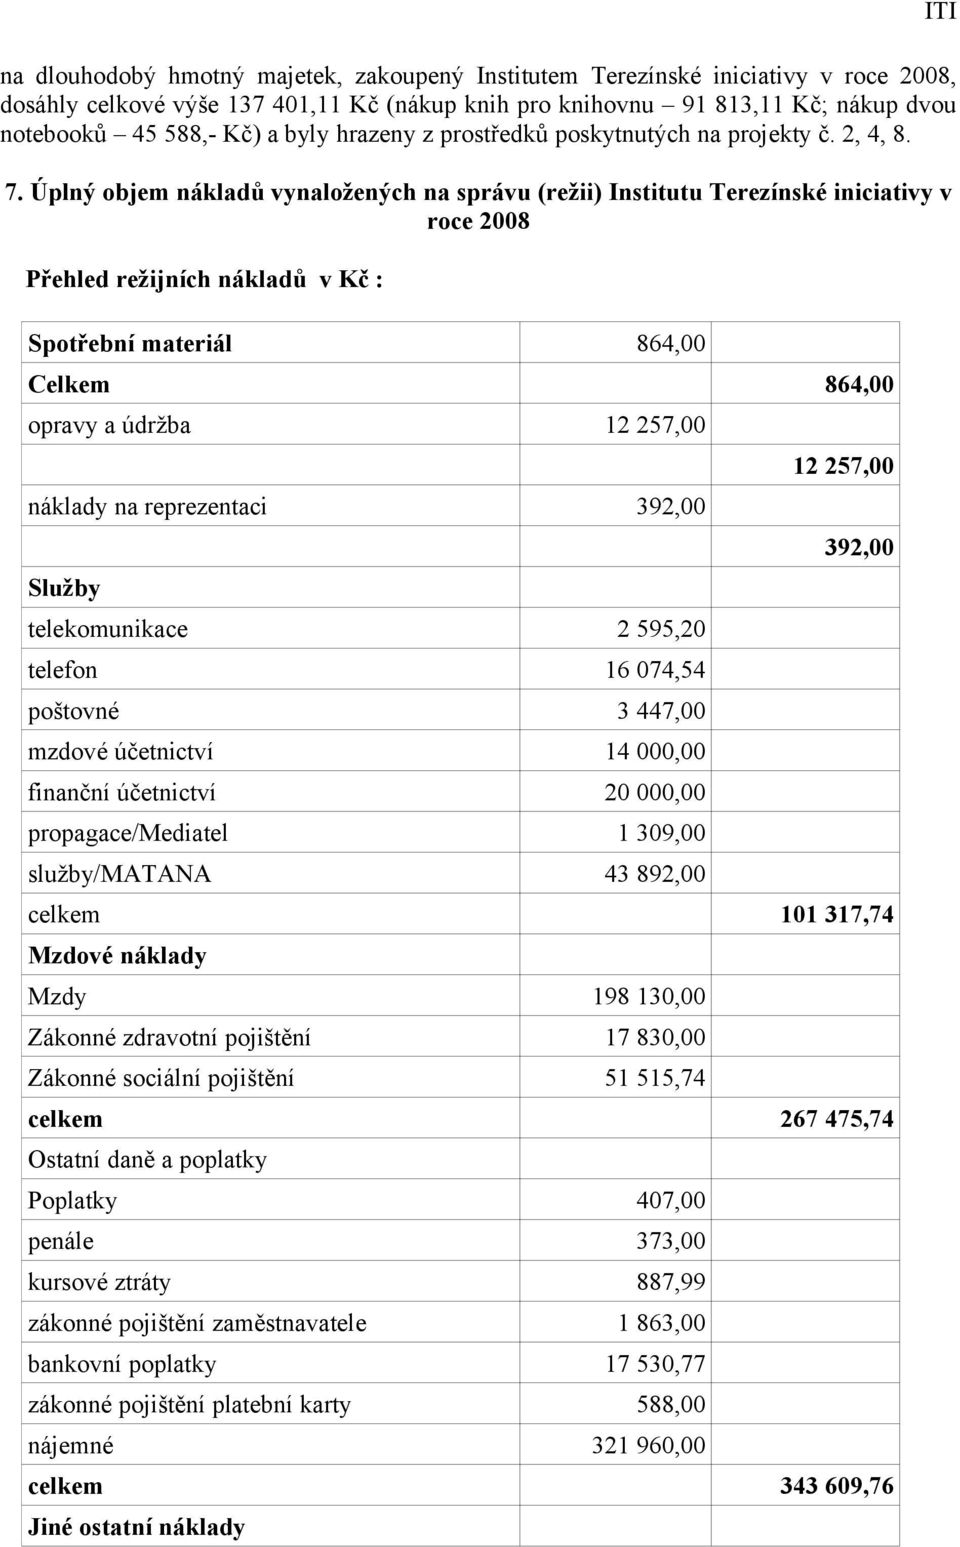 Úplný objem nákladů vynaložených na správu (režii) Institutu Terezínské iniciativy v roce 2008 Přehled režijních nákladů v Kč : Spotřební materiál 864,00 Celkem 864,00 opravy a údržba 12 257,00